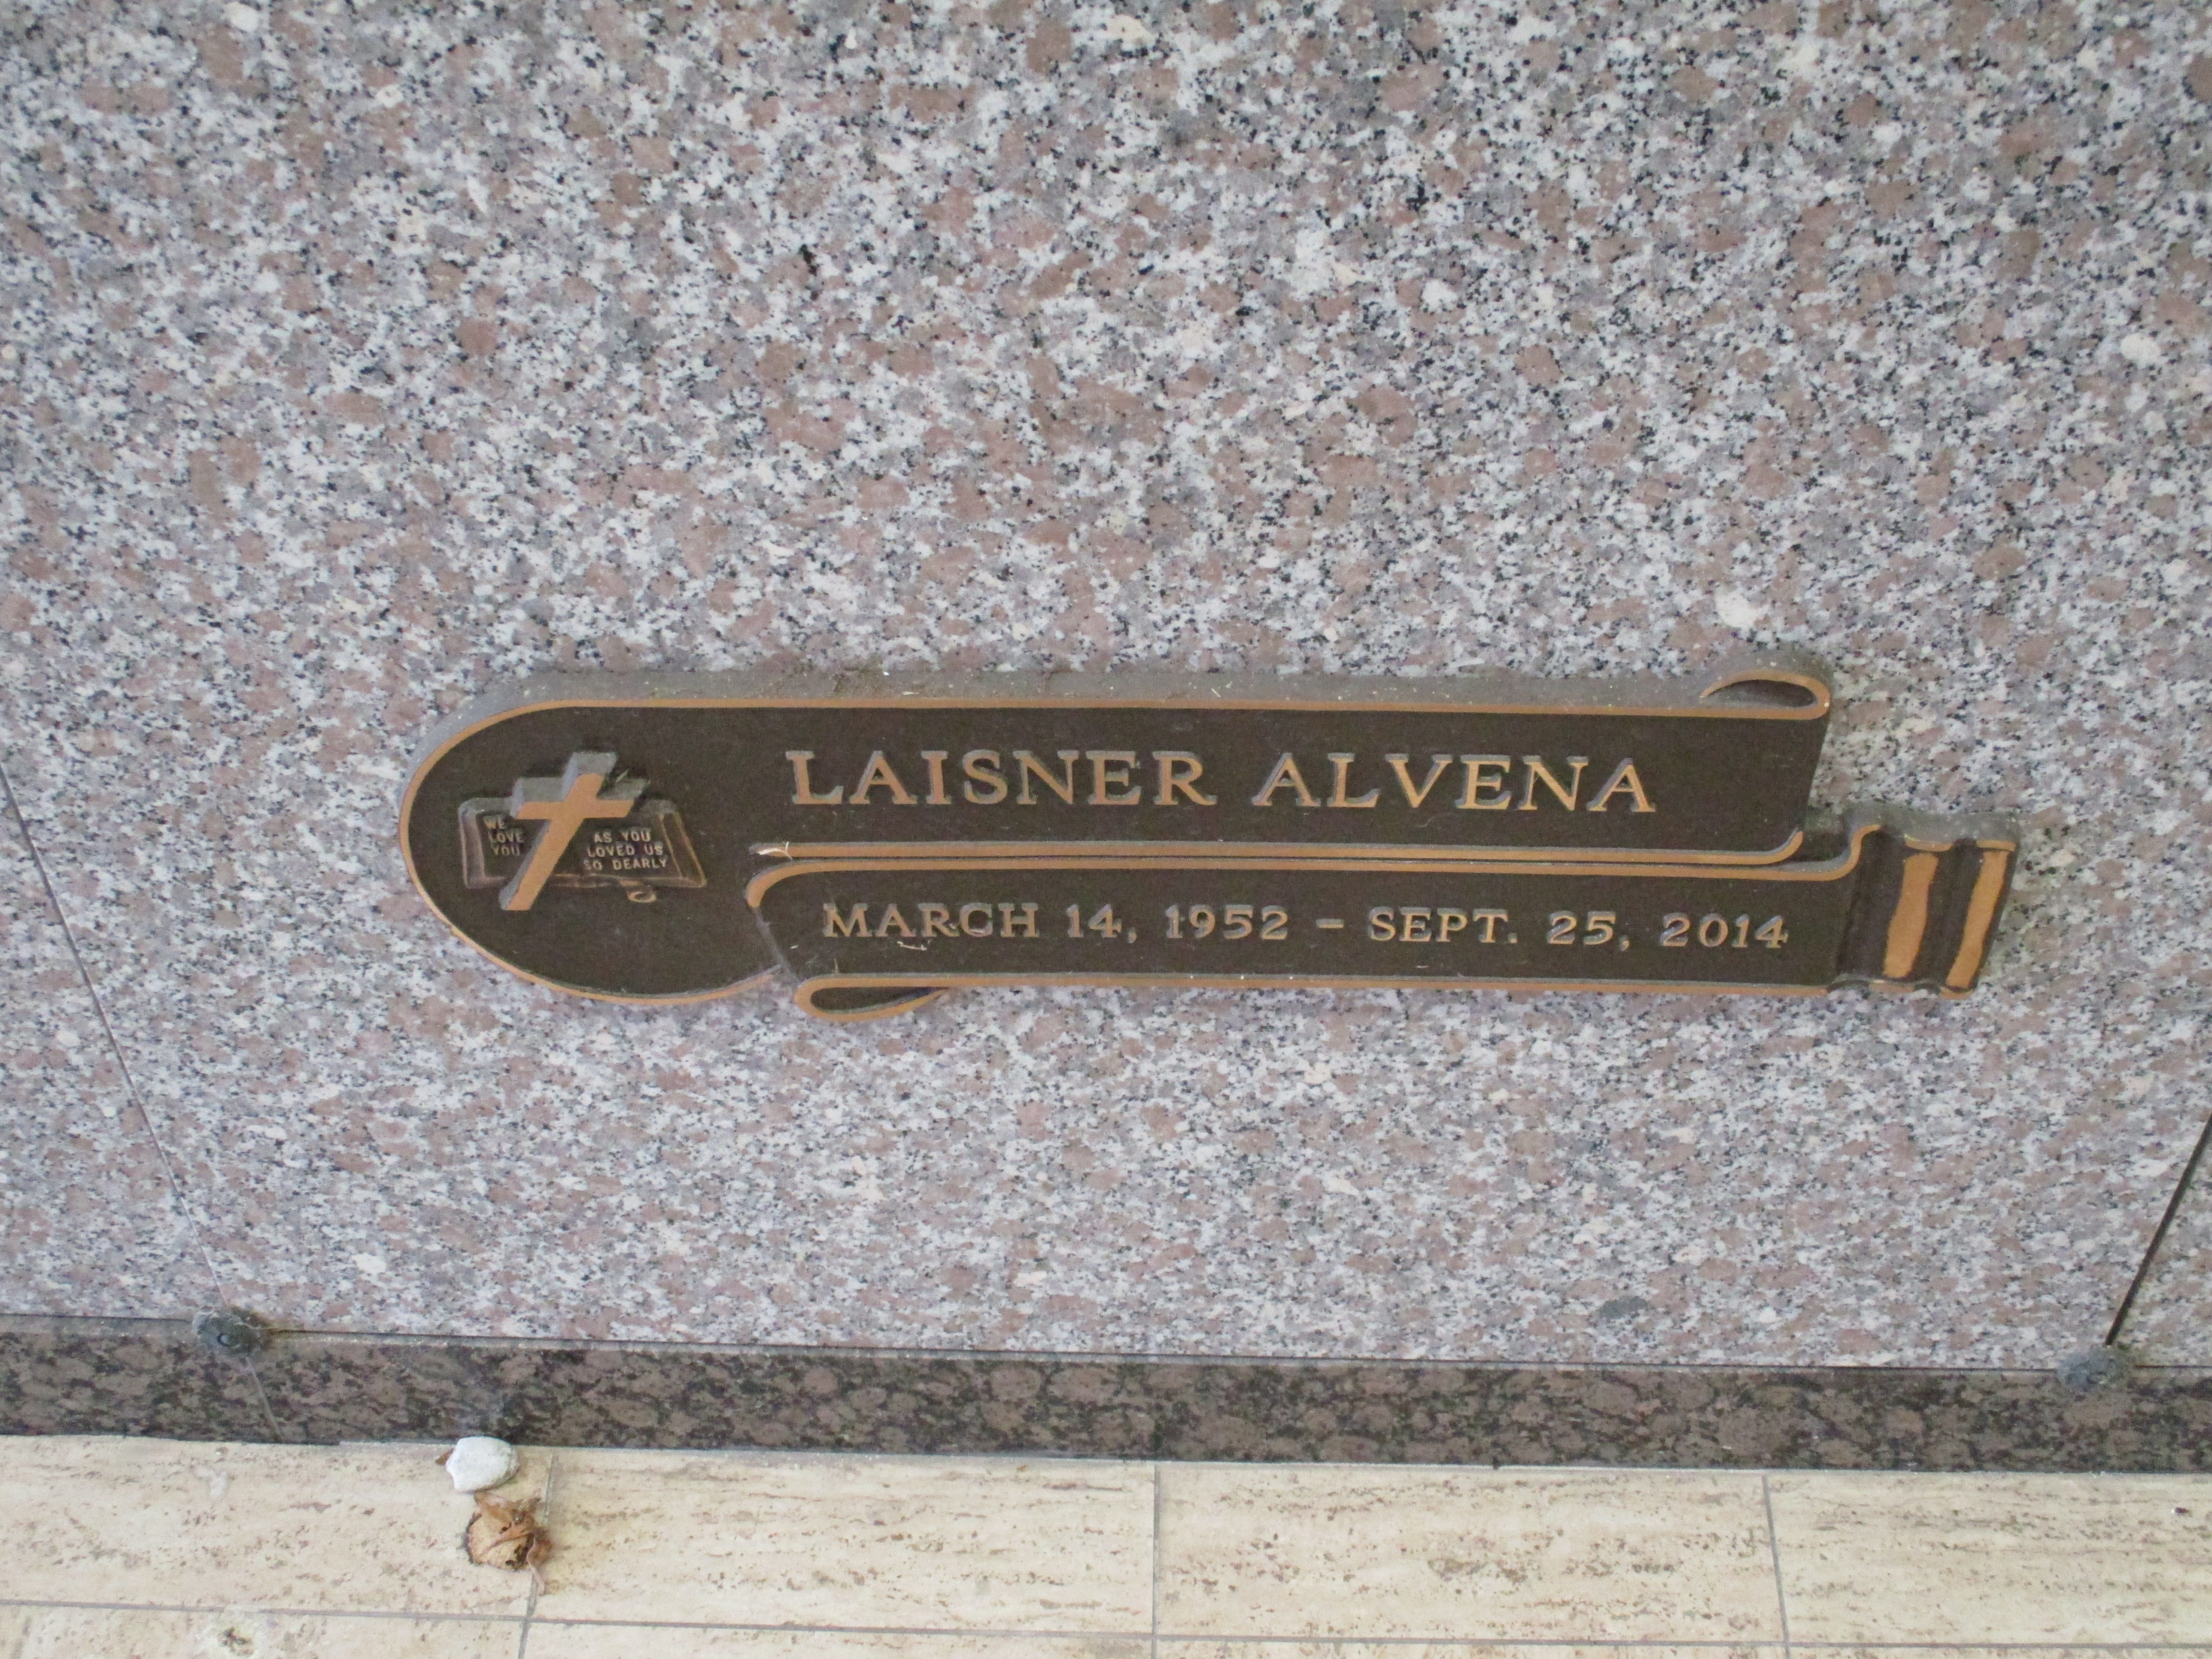 Laisner Alvena